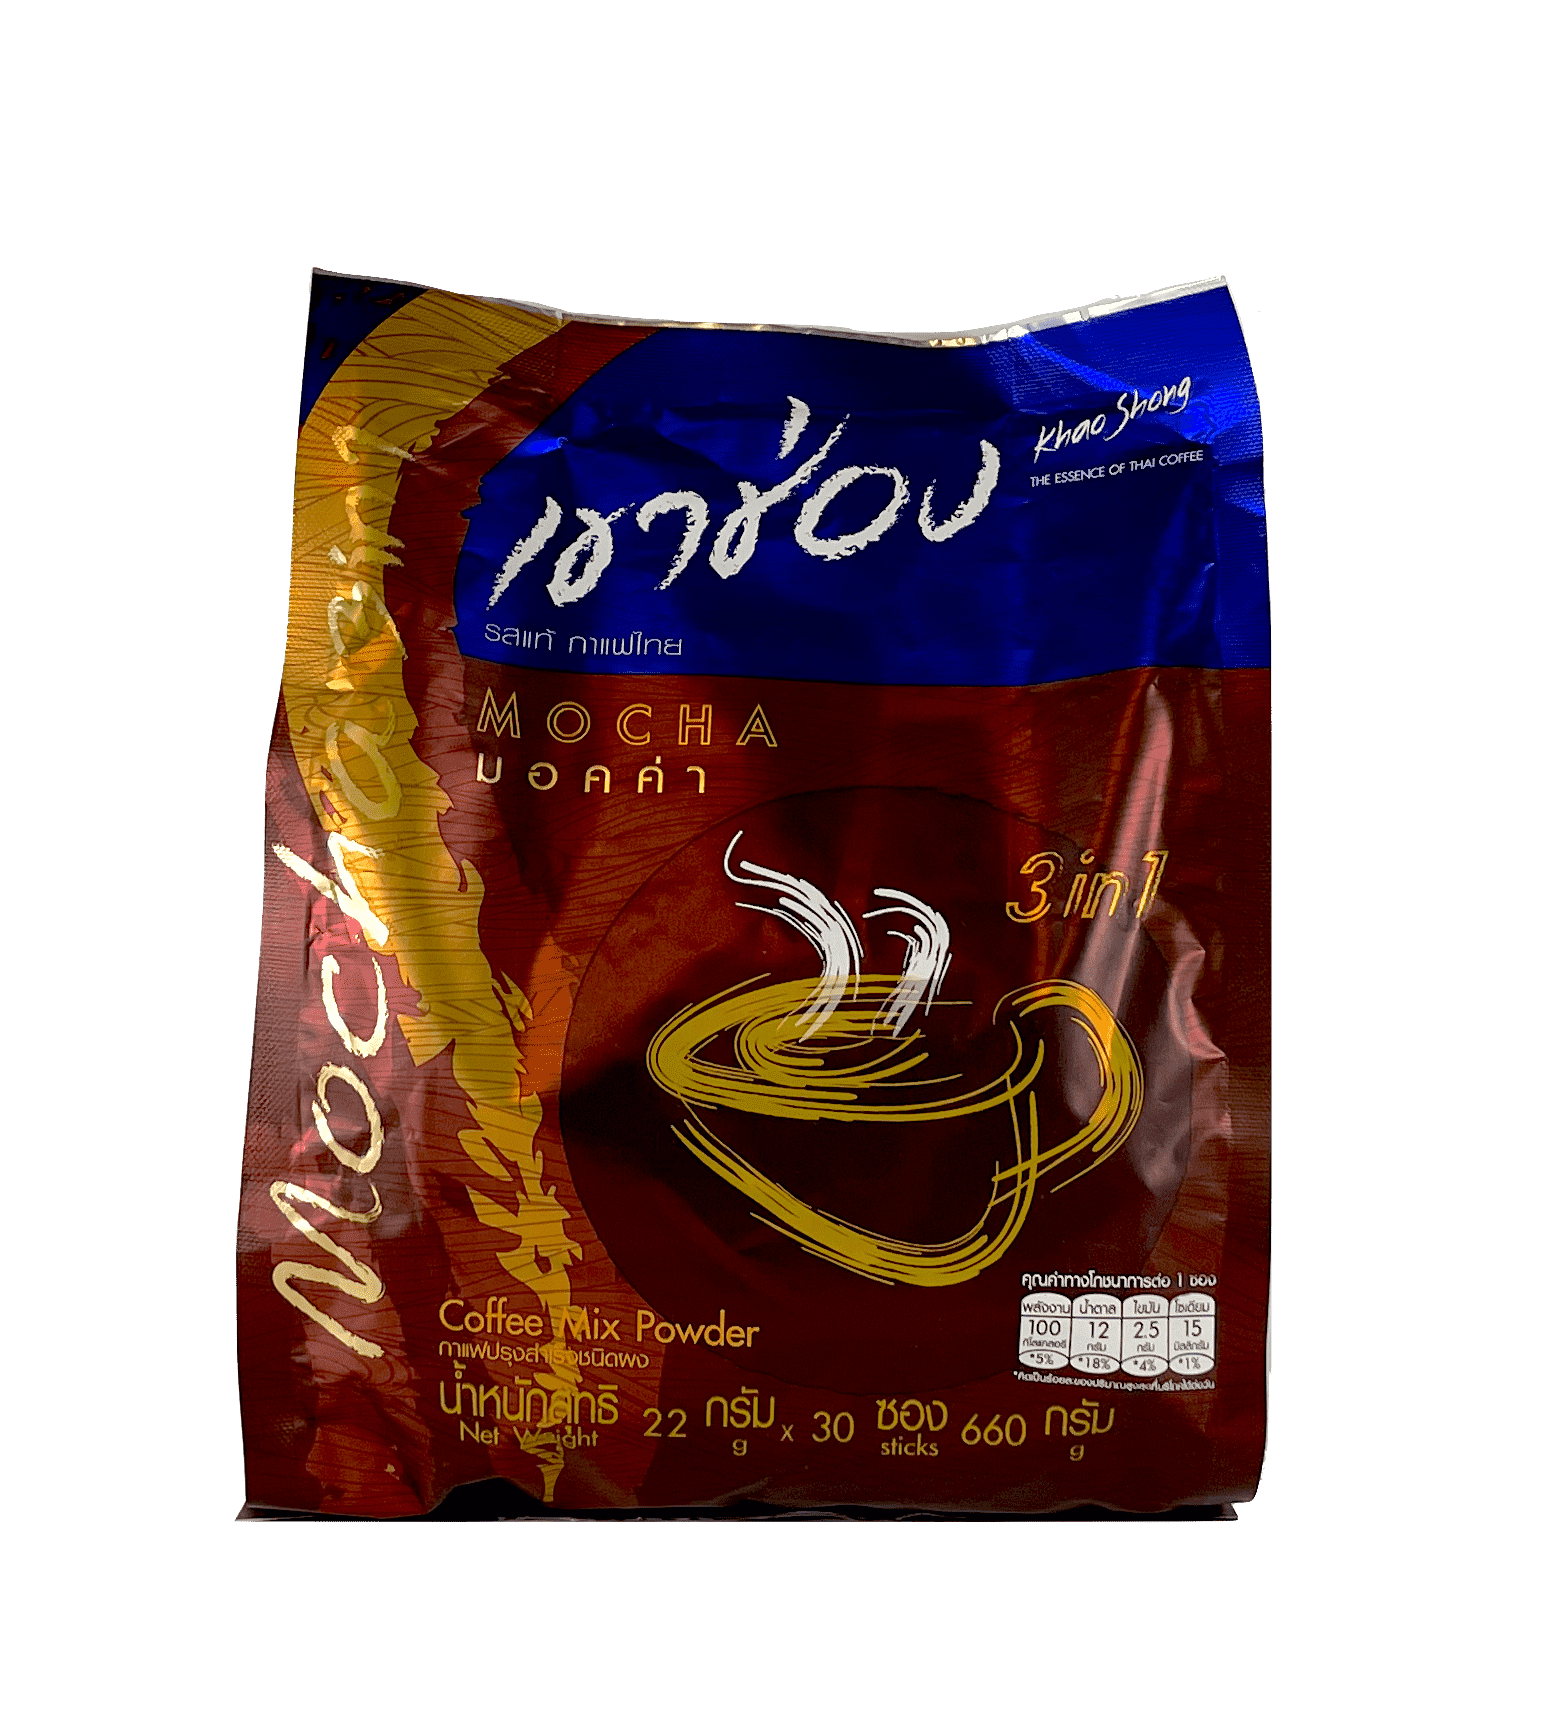 Snabbkaffe 3 In 1 Mocha 22gx30st/p Khao Shong Thailand